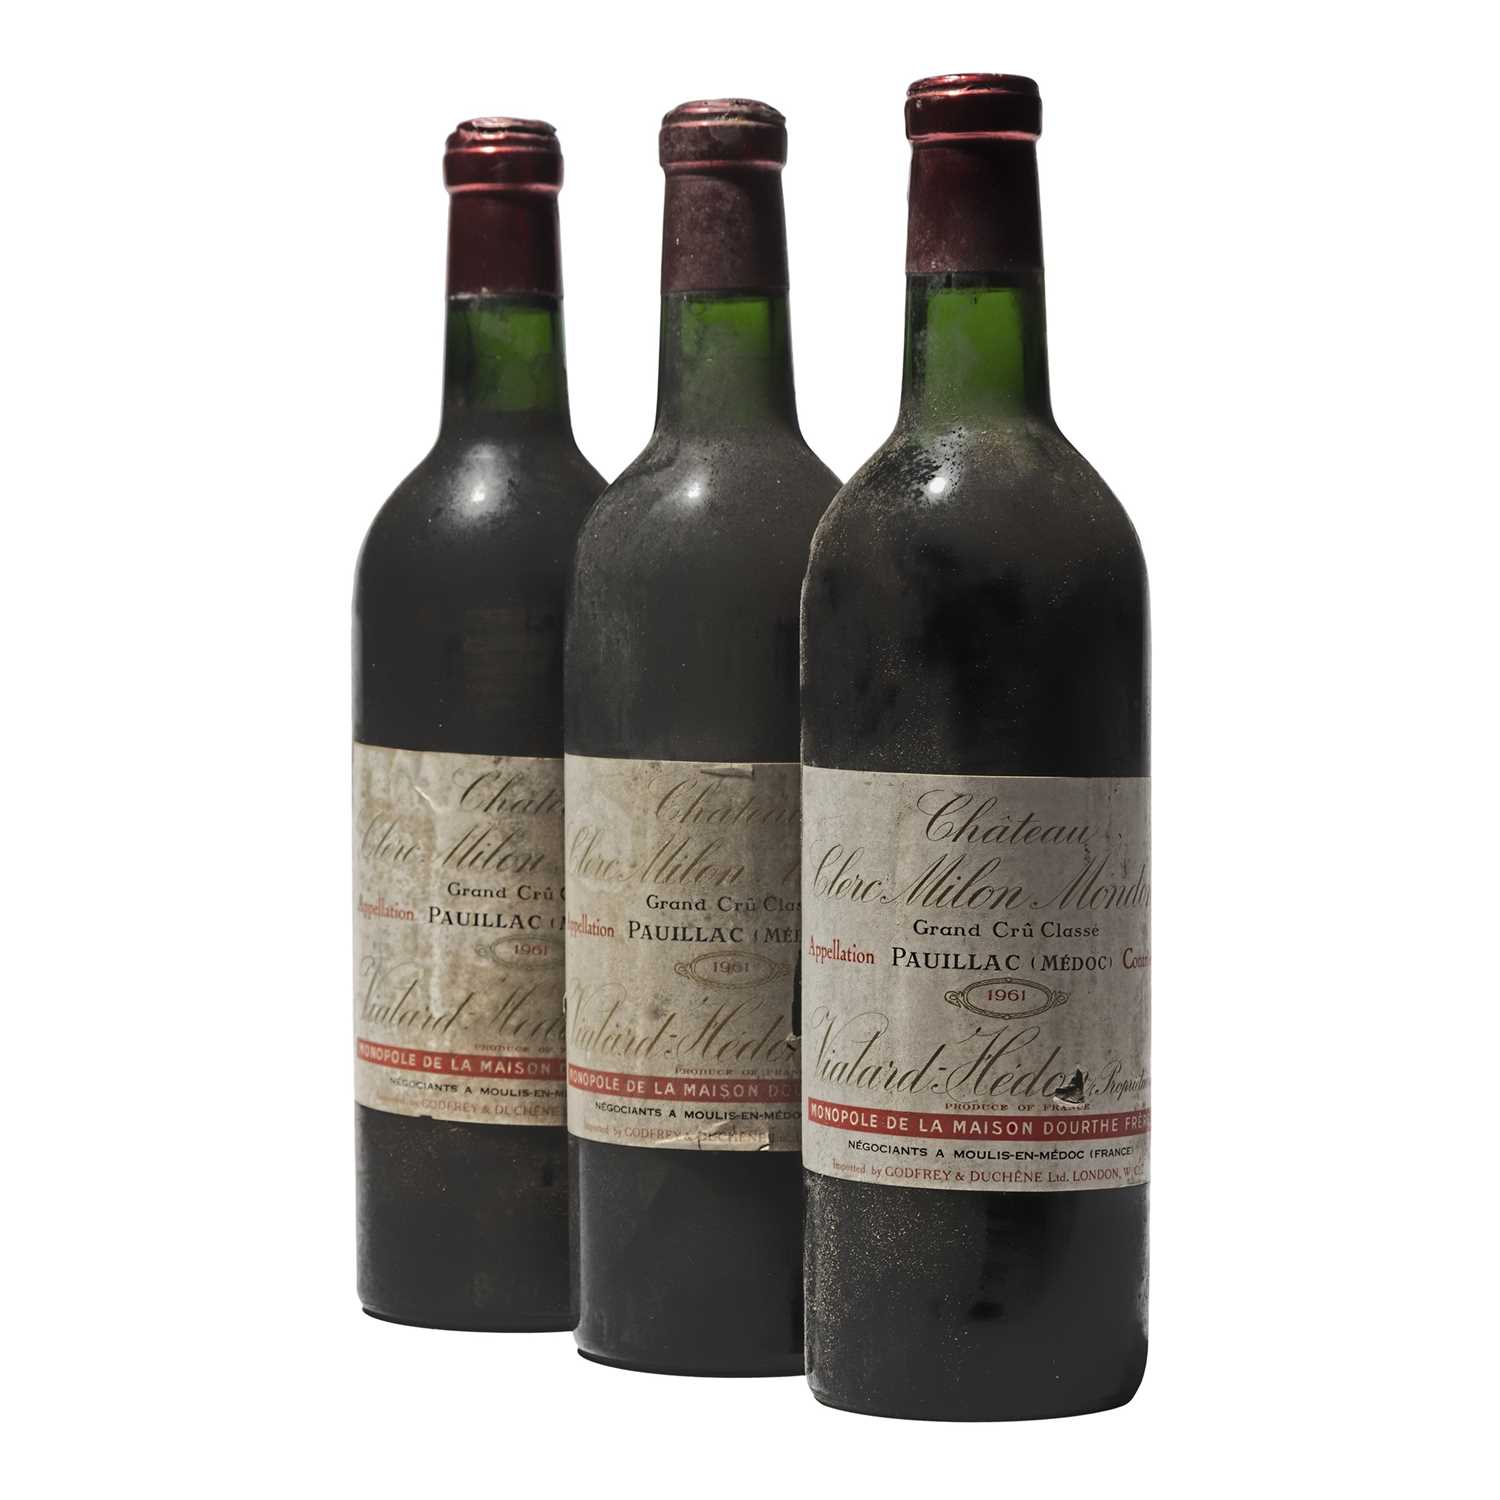 Lot 42 - 5 bottles 1961 Ch Clerc Milon Mondon